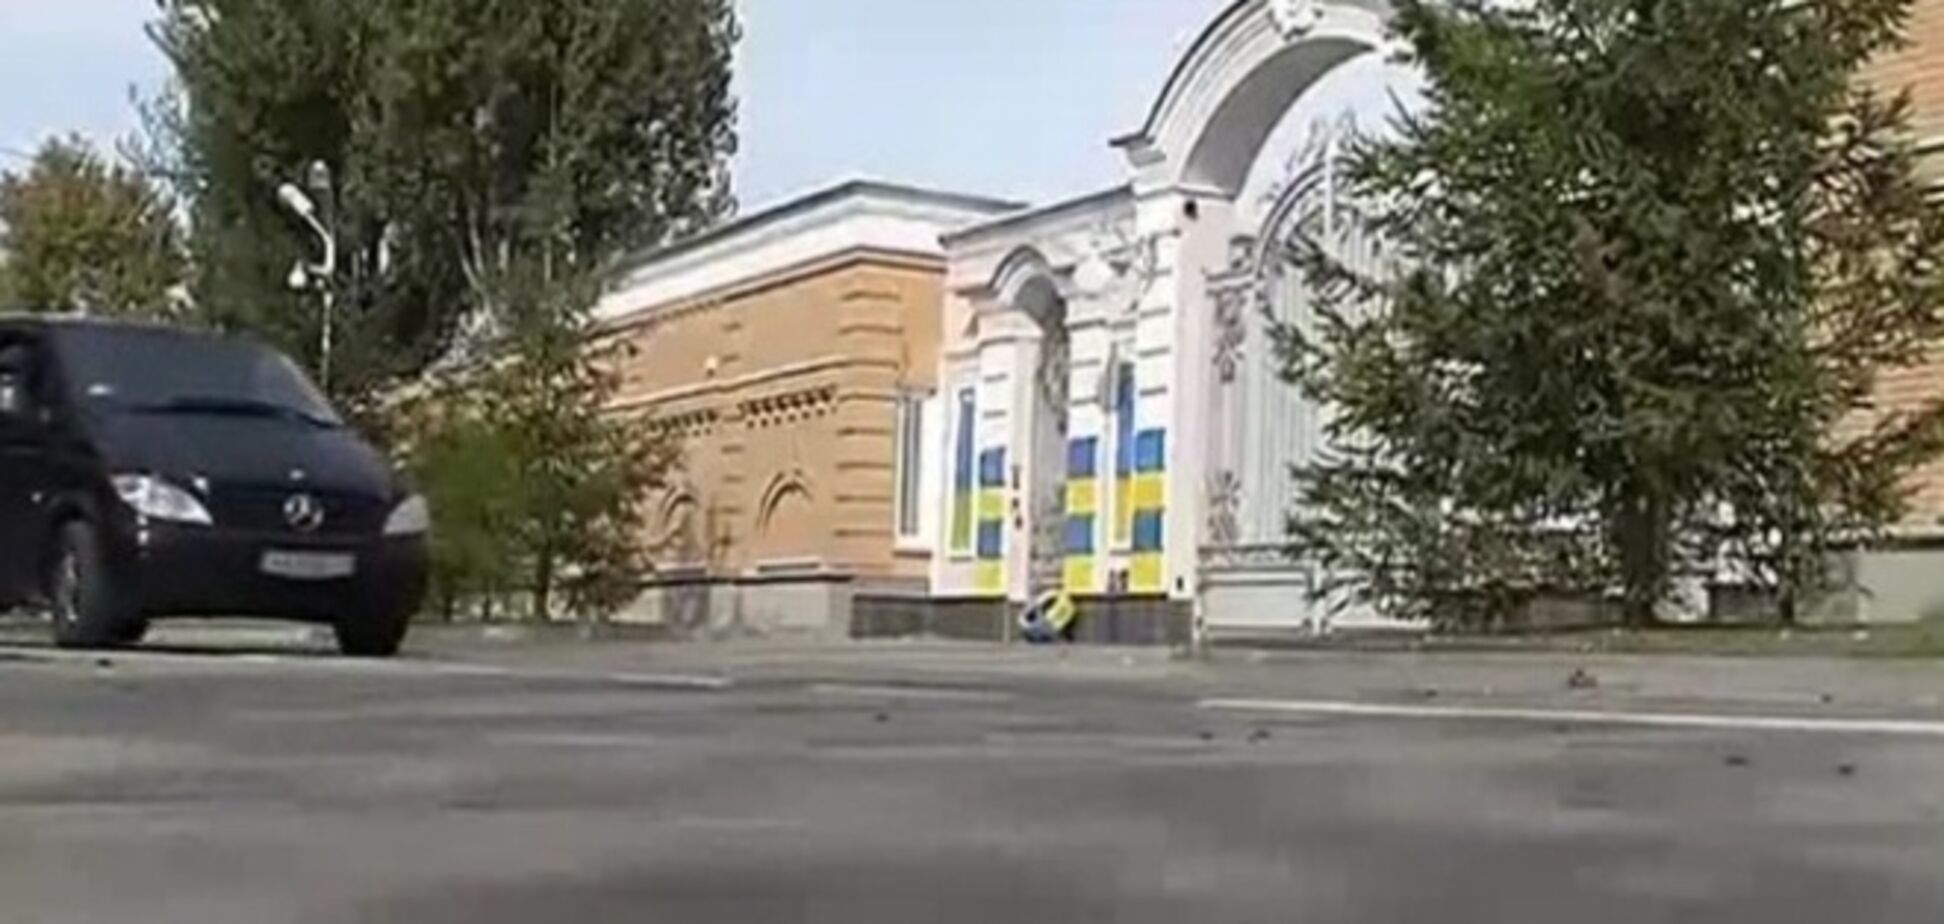 Забор дома Порошенко разрисовали в сине-желтый цвет